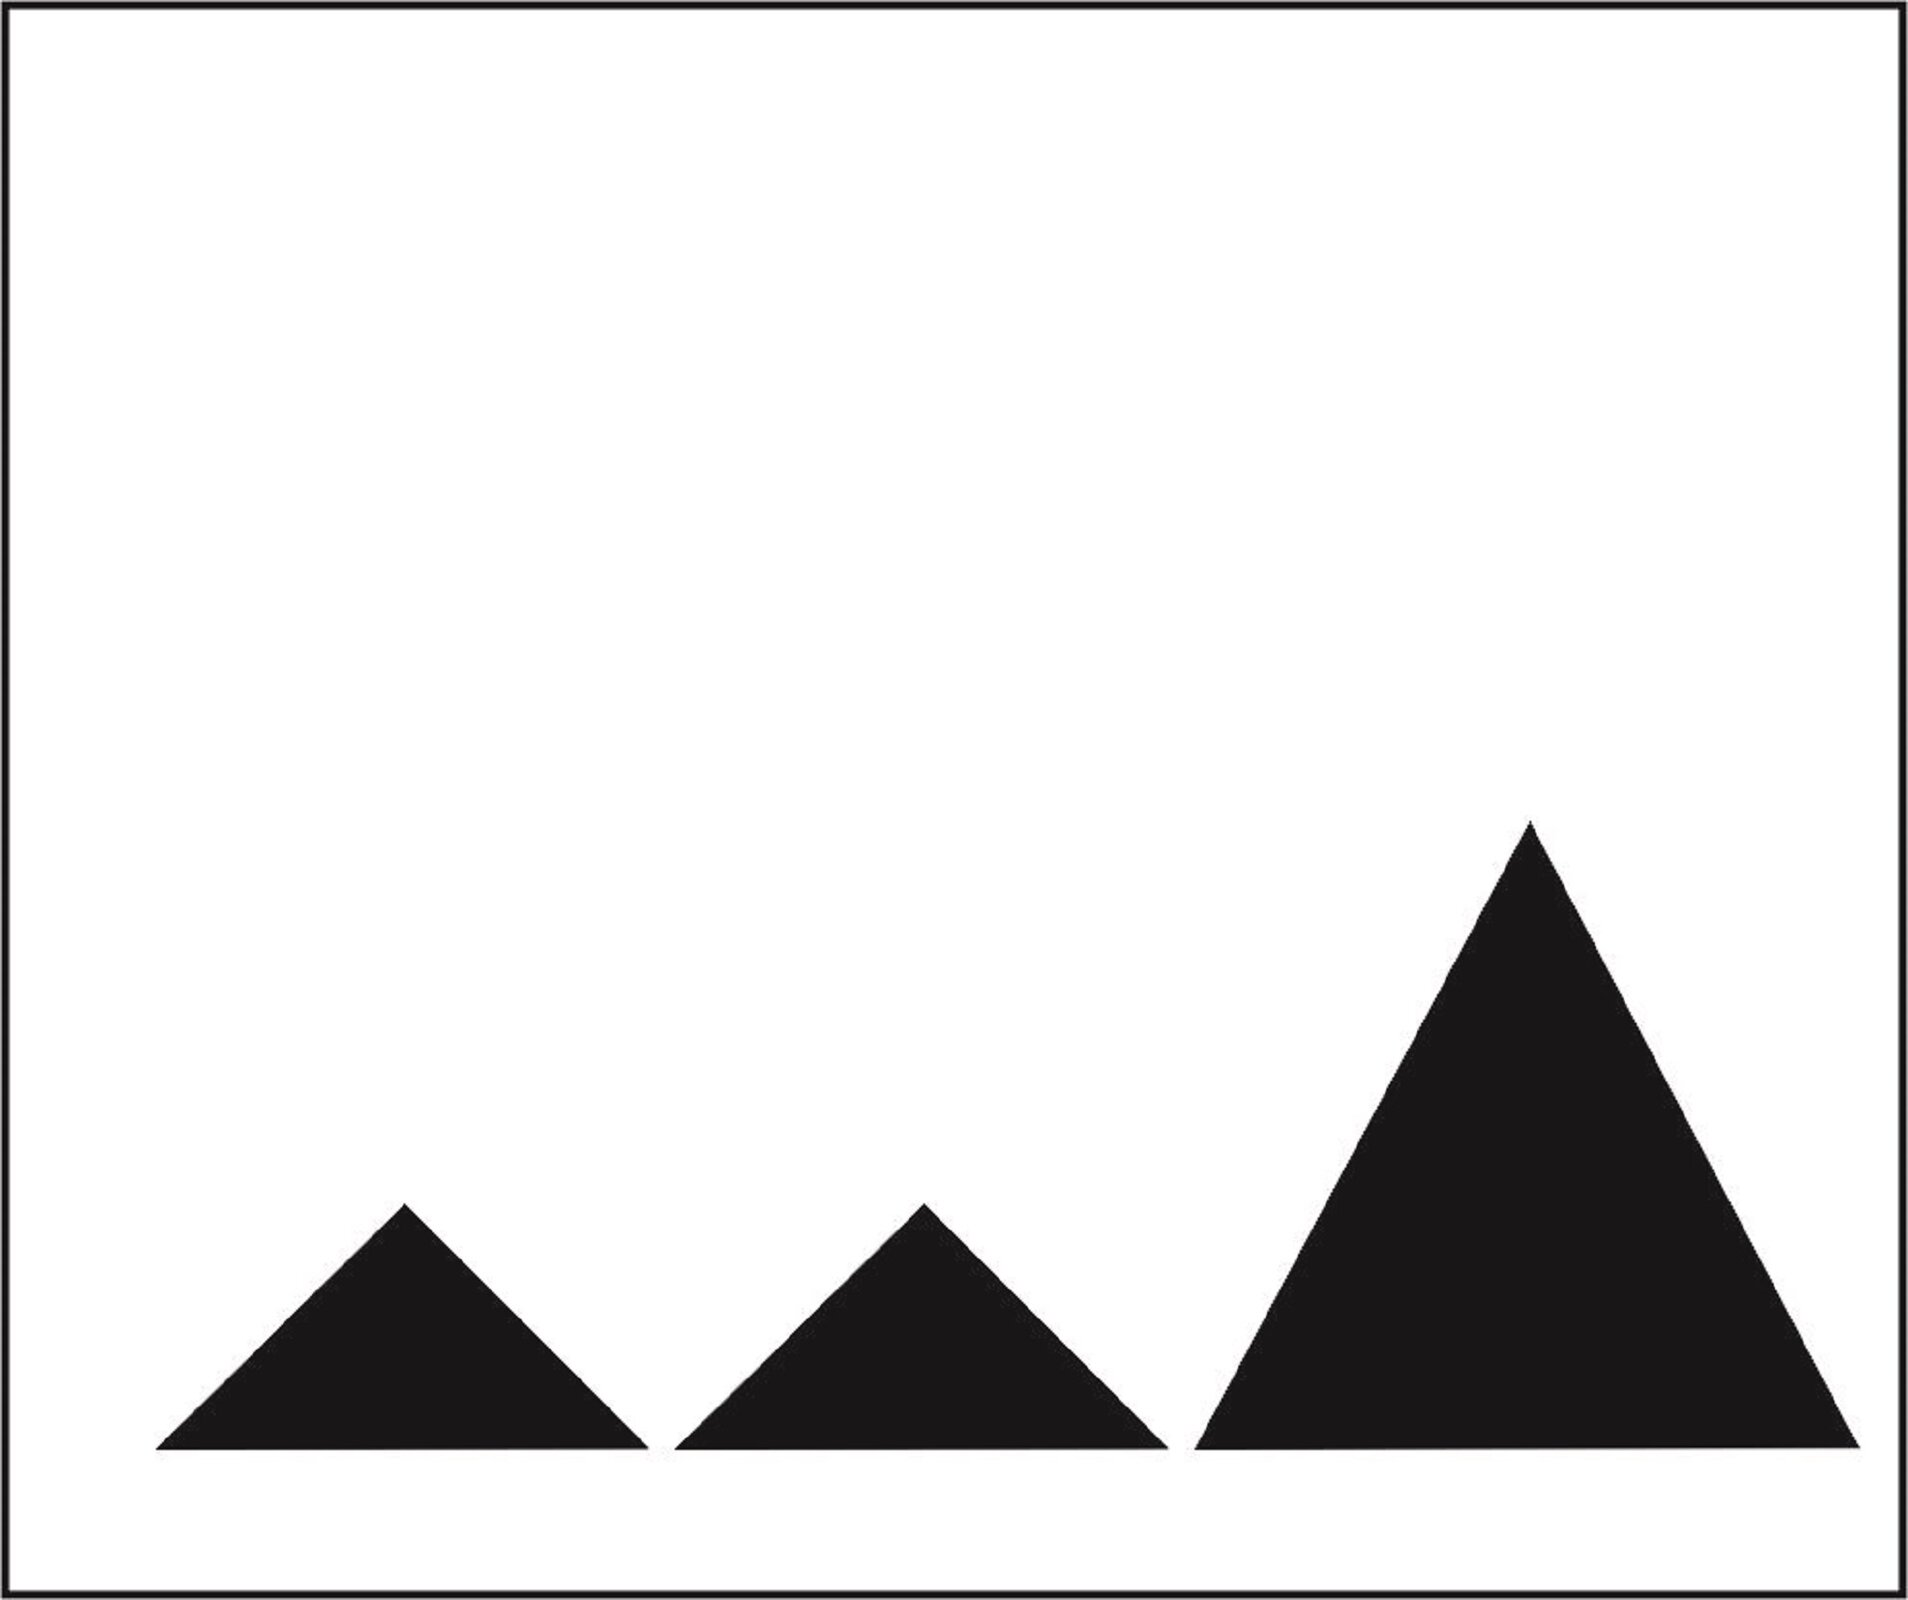 Ilustracja przedstawia czarno-białą grafikę. Na dole kompozycji znajdują się trzy, ułożone jeden obok drugiego, czarne trójkąty. Pierwszy trójkąt od lewej strony oraz środkowy są równe, natomiast trójkąt po prawej jest większy. Figury znajdują się na białym tle. Całość zamknięta jest czarną, cienką ramką.